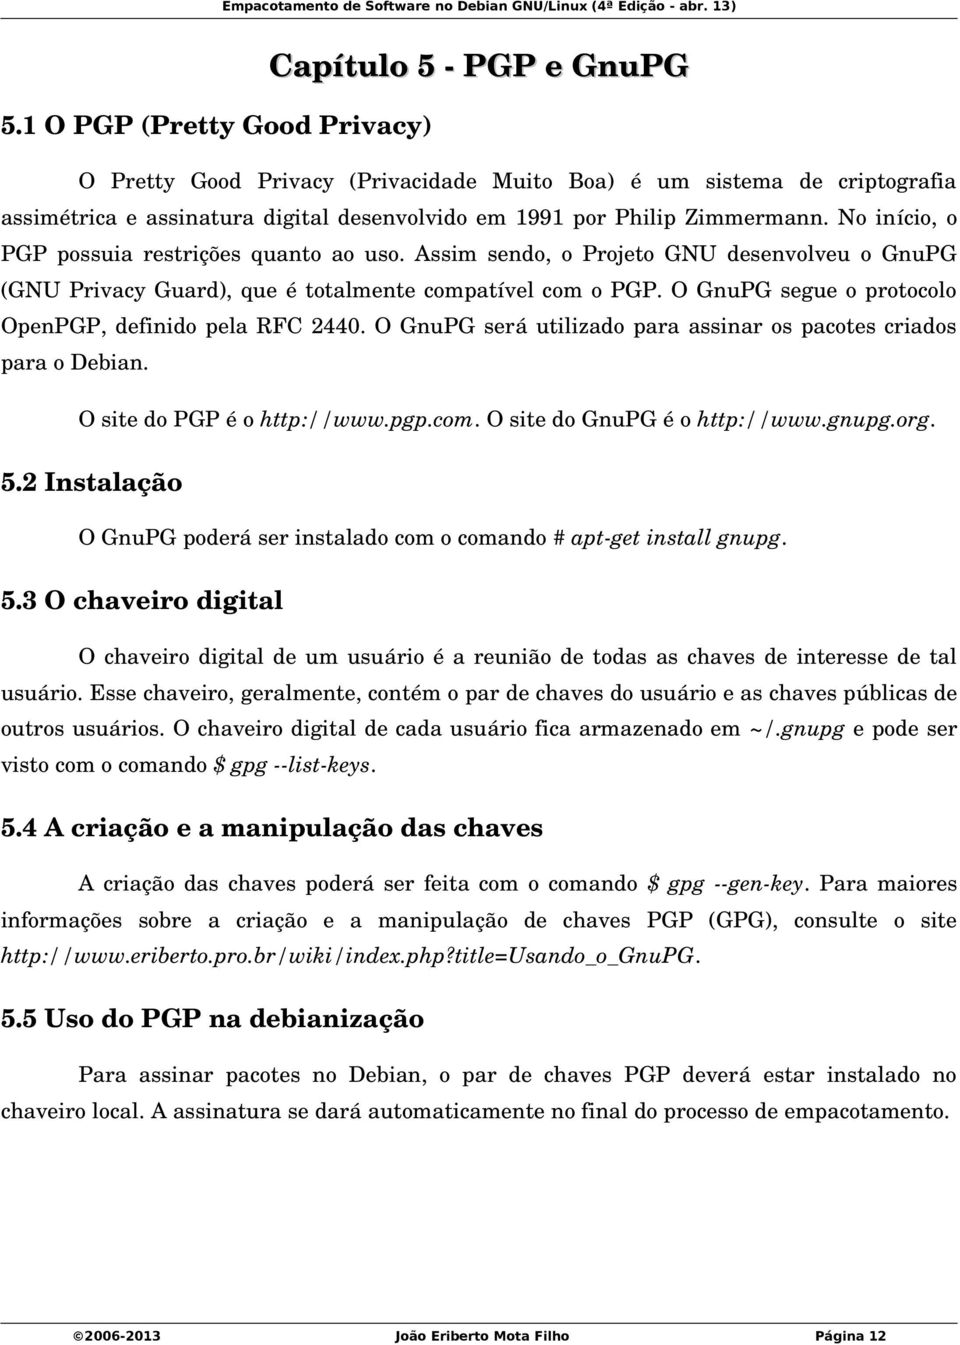 O GnuPG segue o protocolo OpenPGP, definido pela RFC 2440. O GnuPG será utilizado para assinar os pacotes criados para o Debian. O site do PGP é o http://www.pgp.com. O site do GnuPG é o http://www.